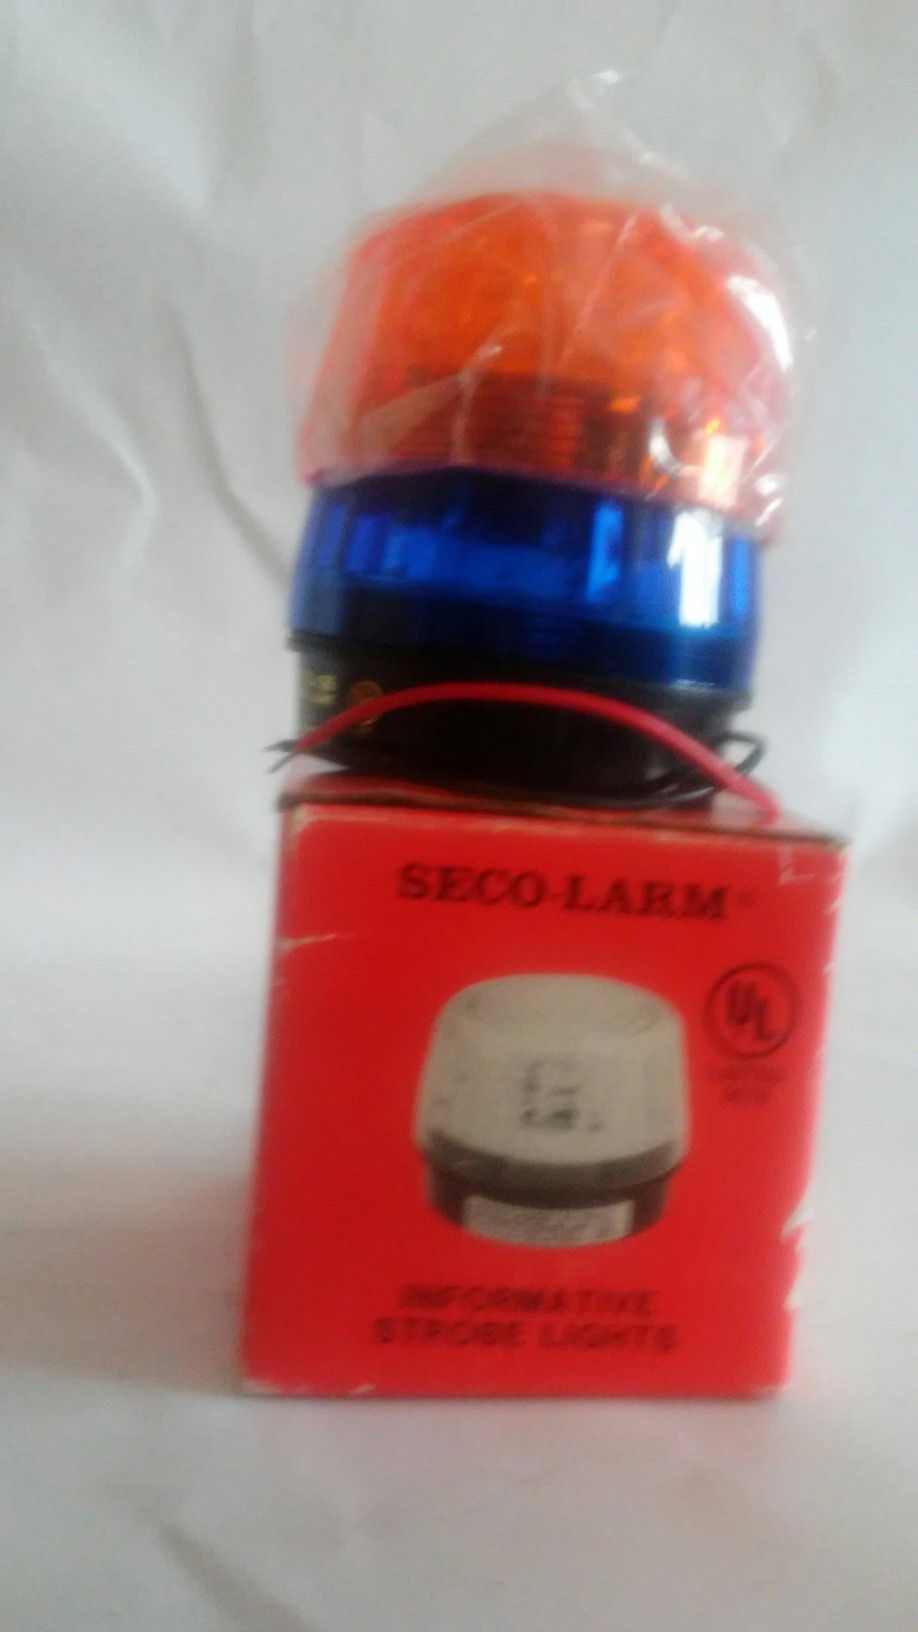 Seco-Larm informative strobe lights